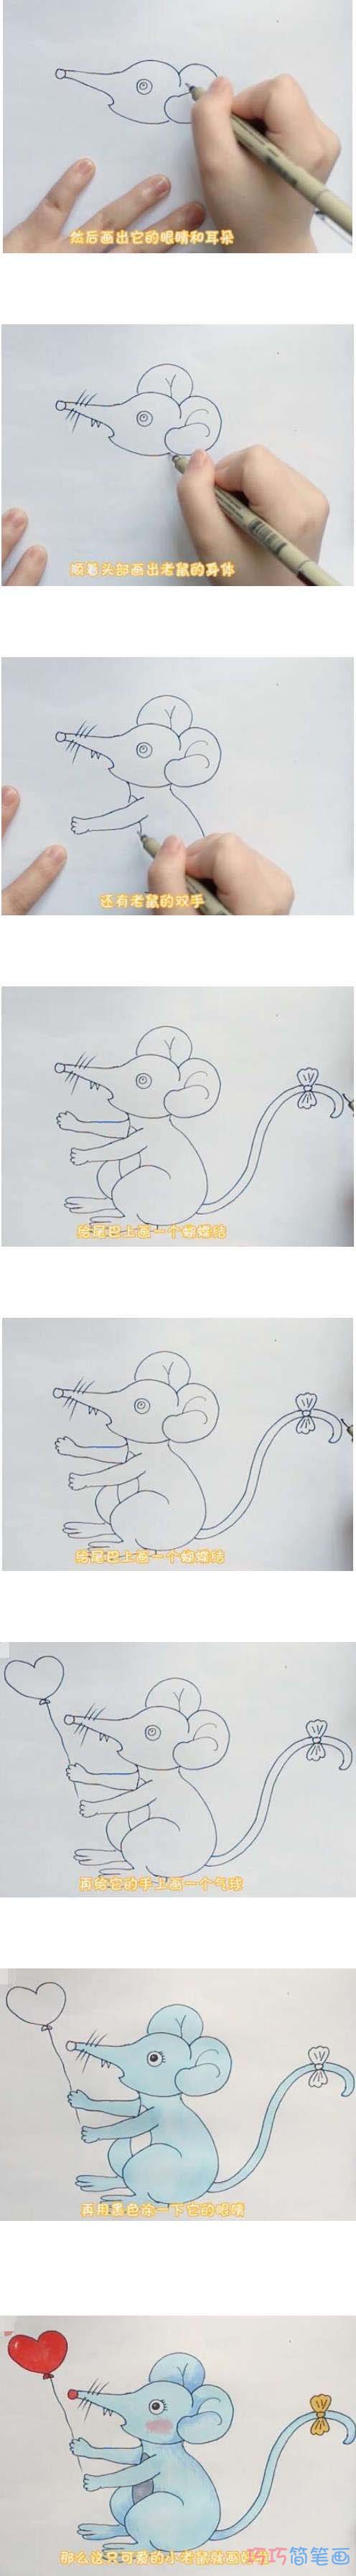 教你如何画小老鼠简笔画步骤教程涂颜色